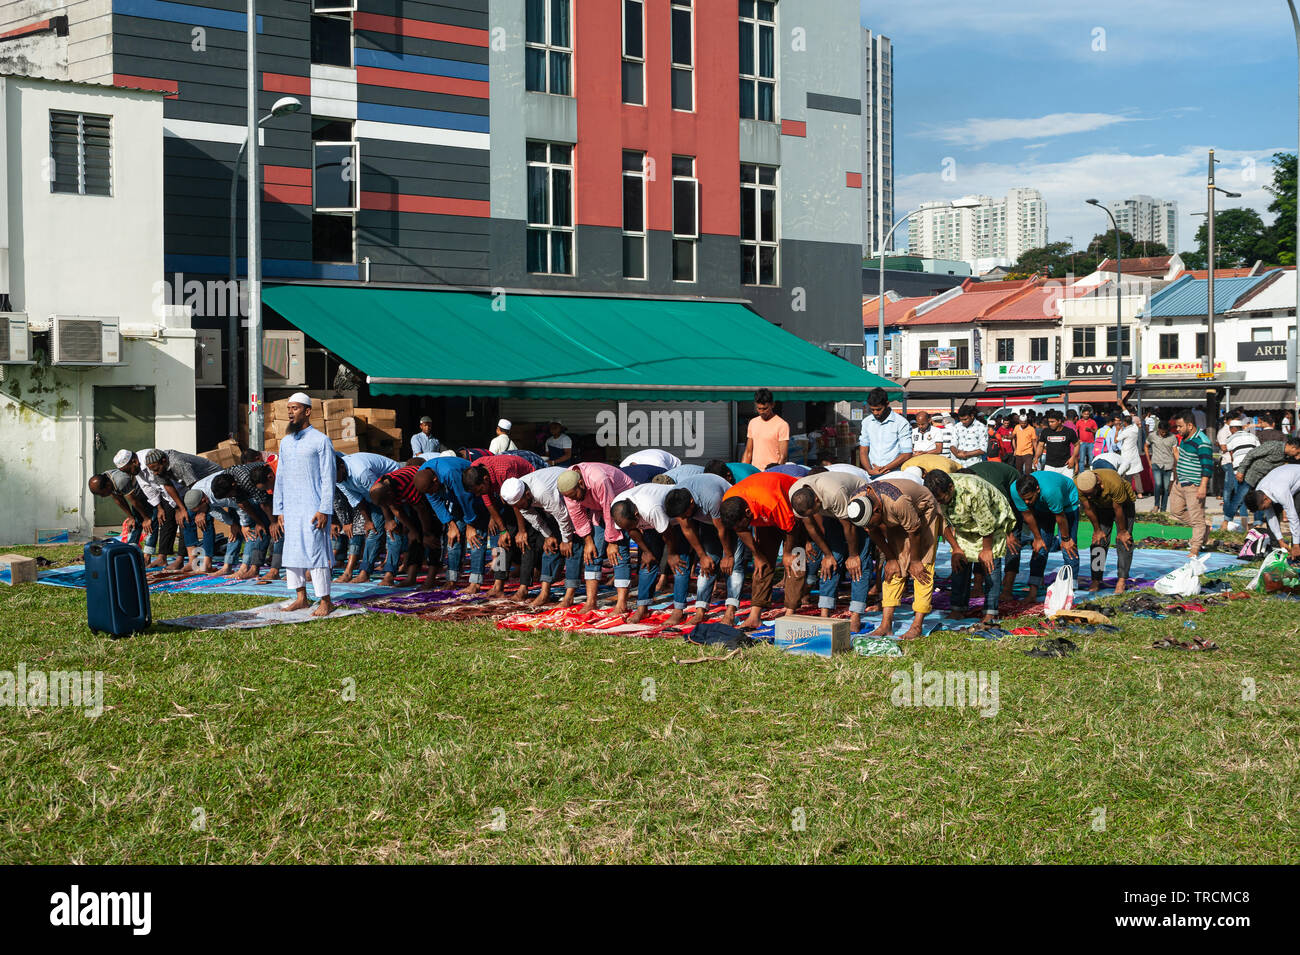 02.06.2019, Singapur, Republik Singapur, Asien-muslimische Männer beten, während des Ramadan auf einem Patch von Gras in Little India. Stockfoto